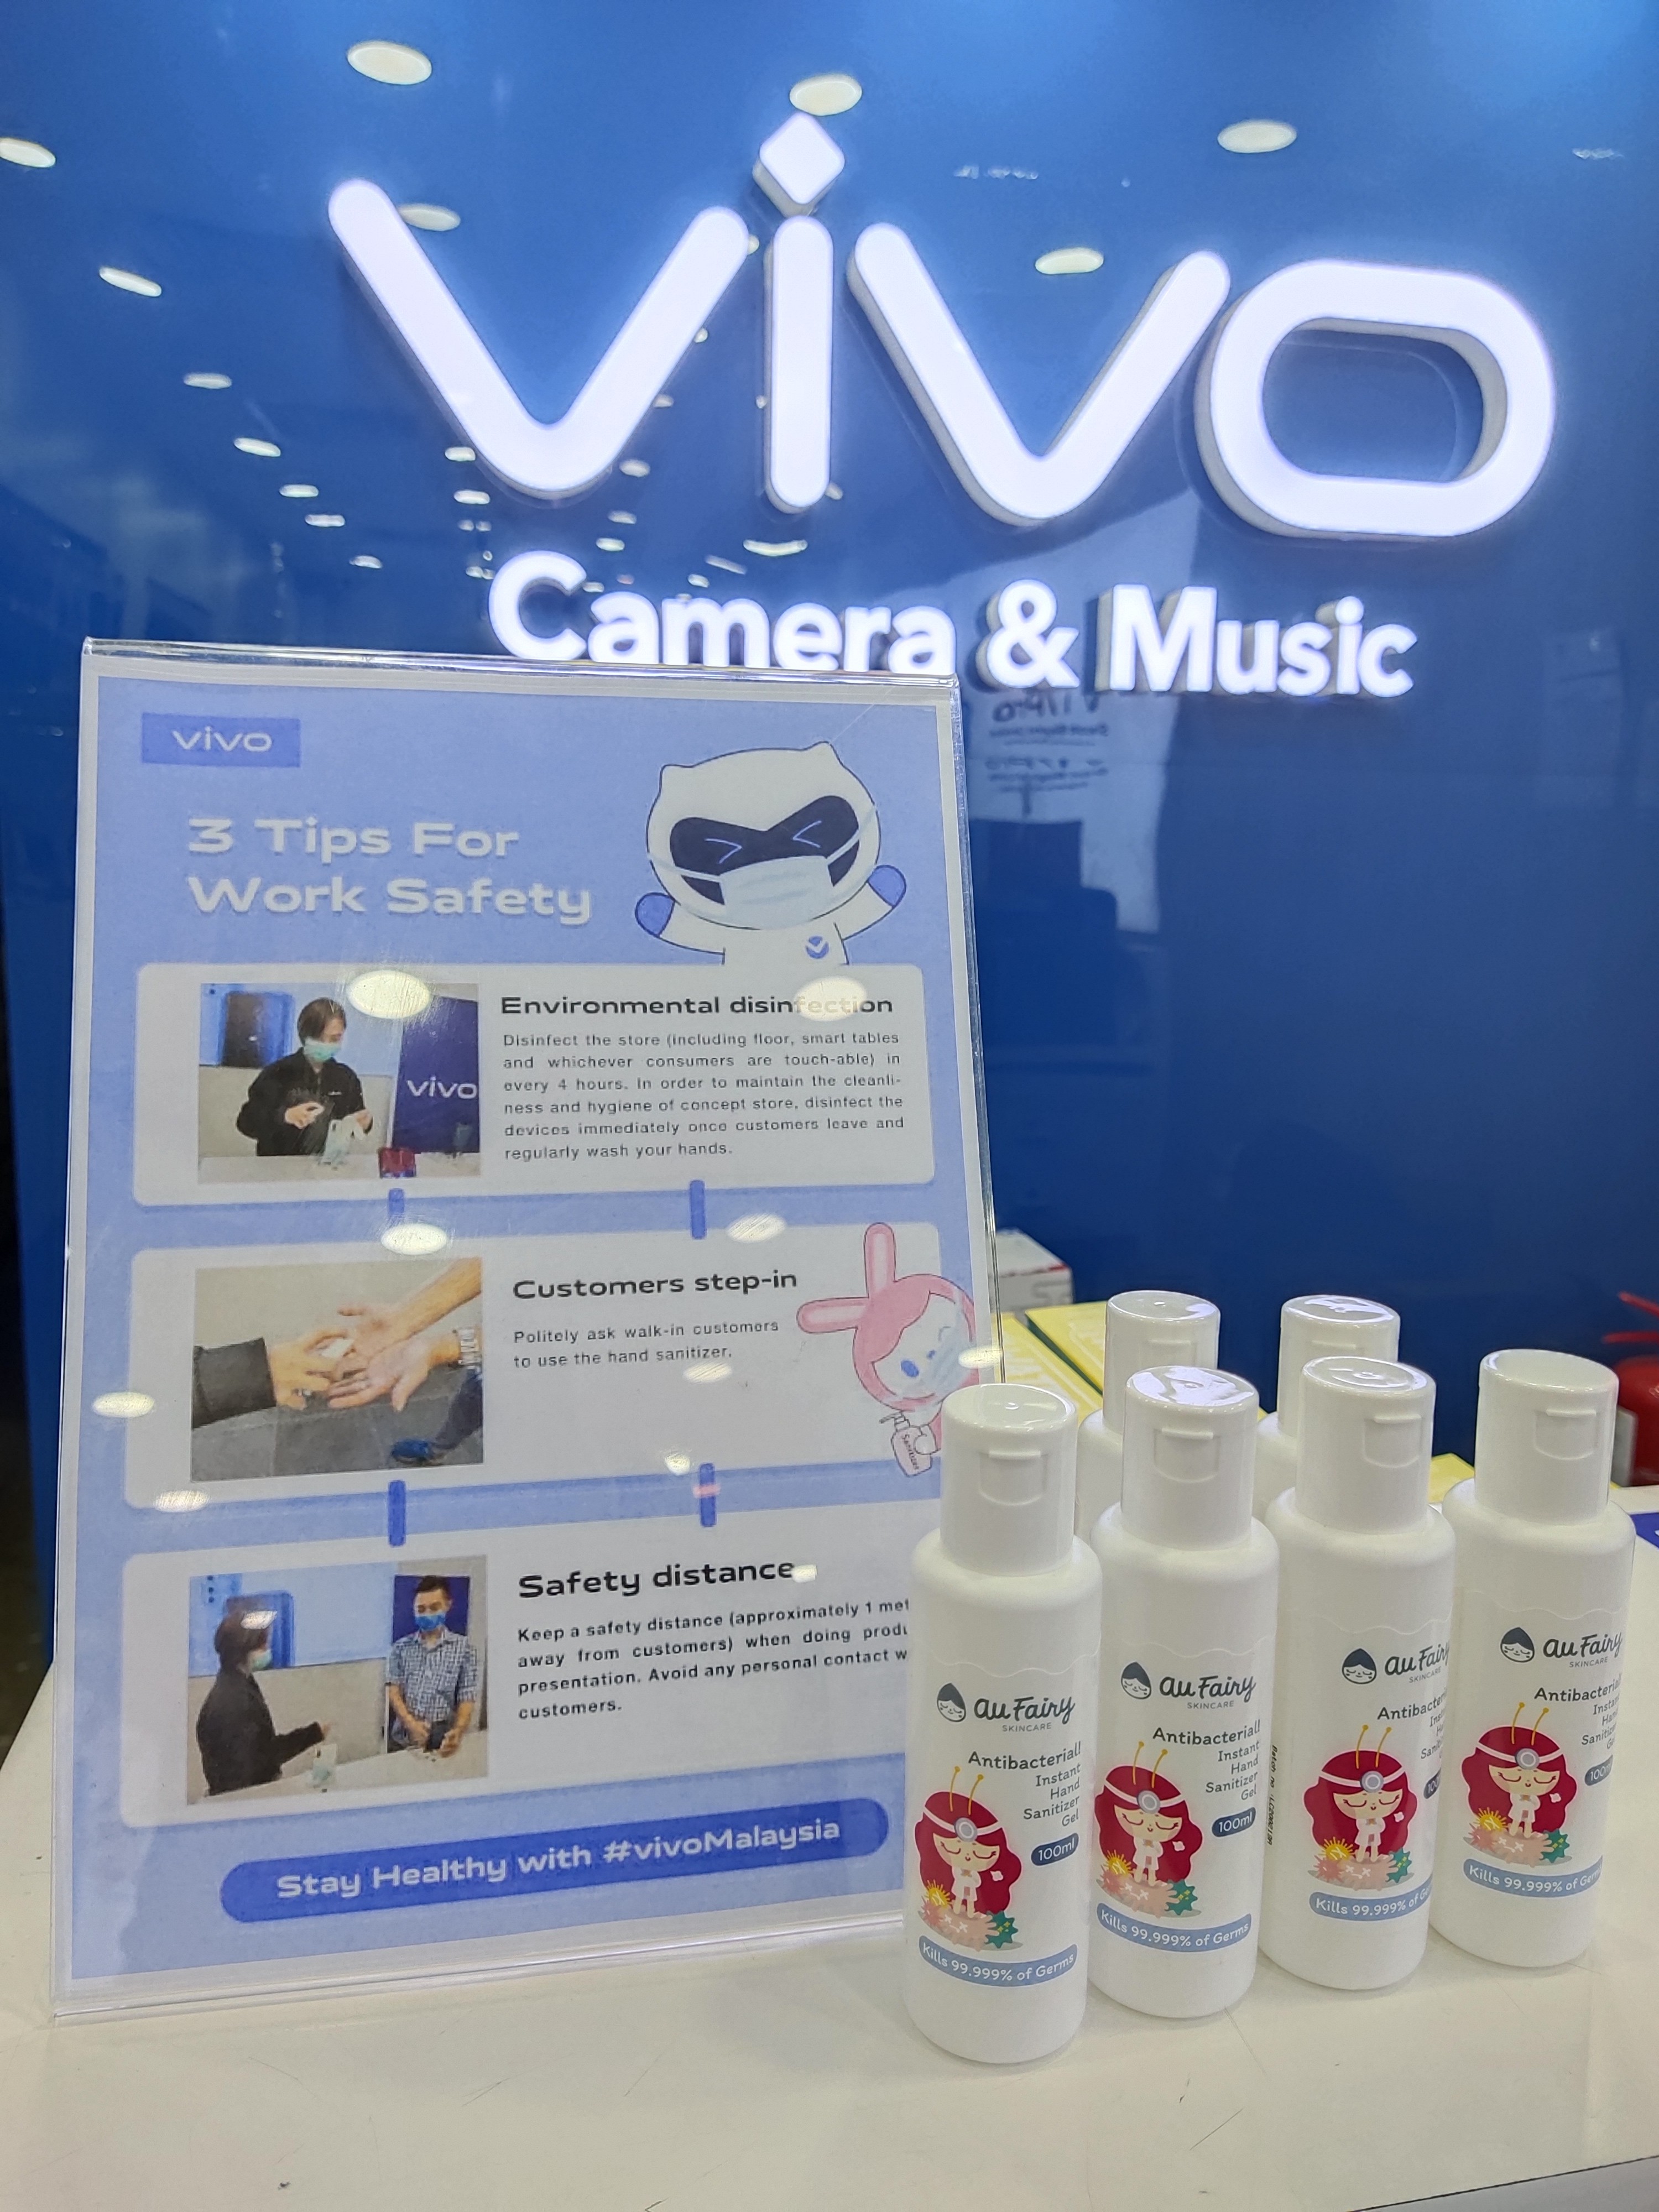 公众可在指定时间前往指定地点免费兑换一瓶洗手液。-Vivo Malaysia提供-